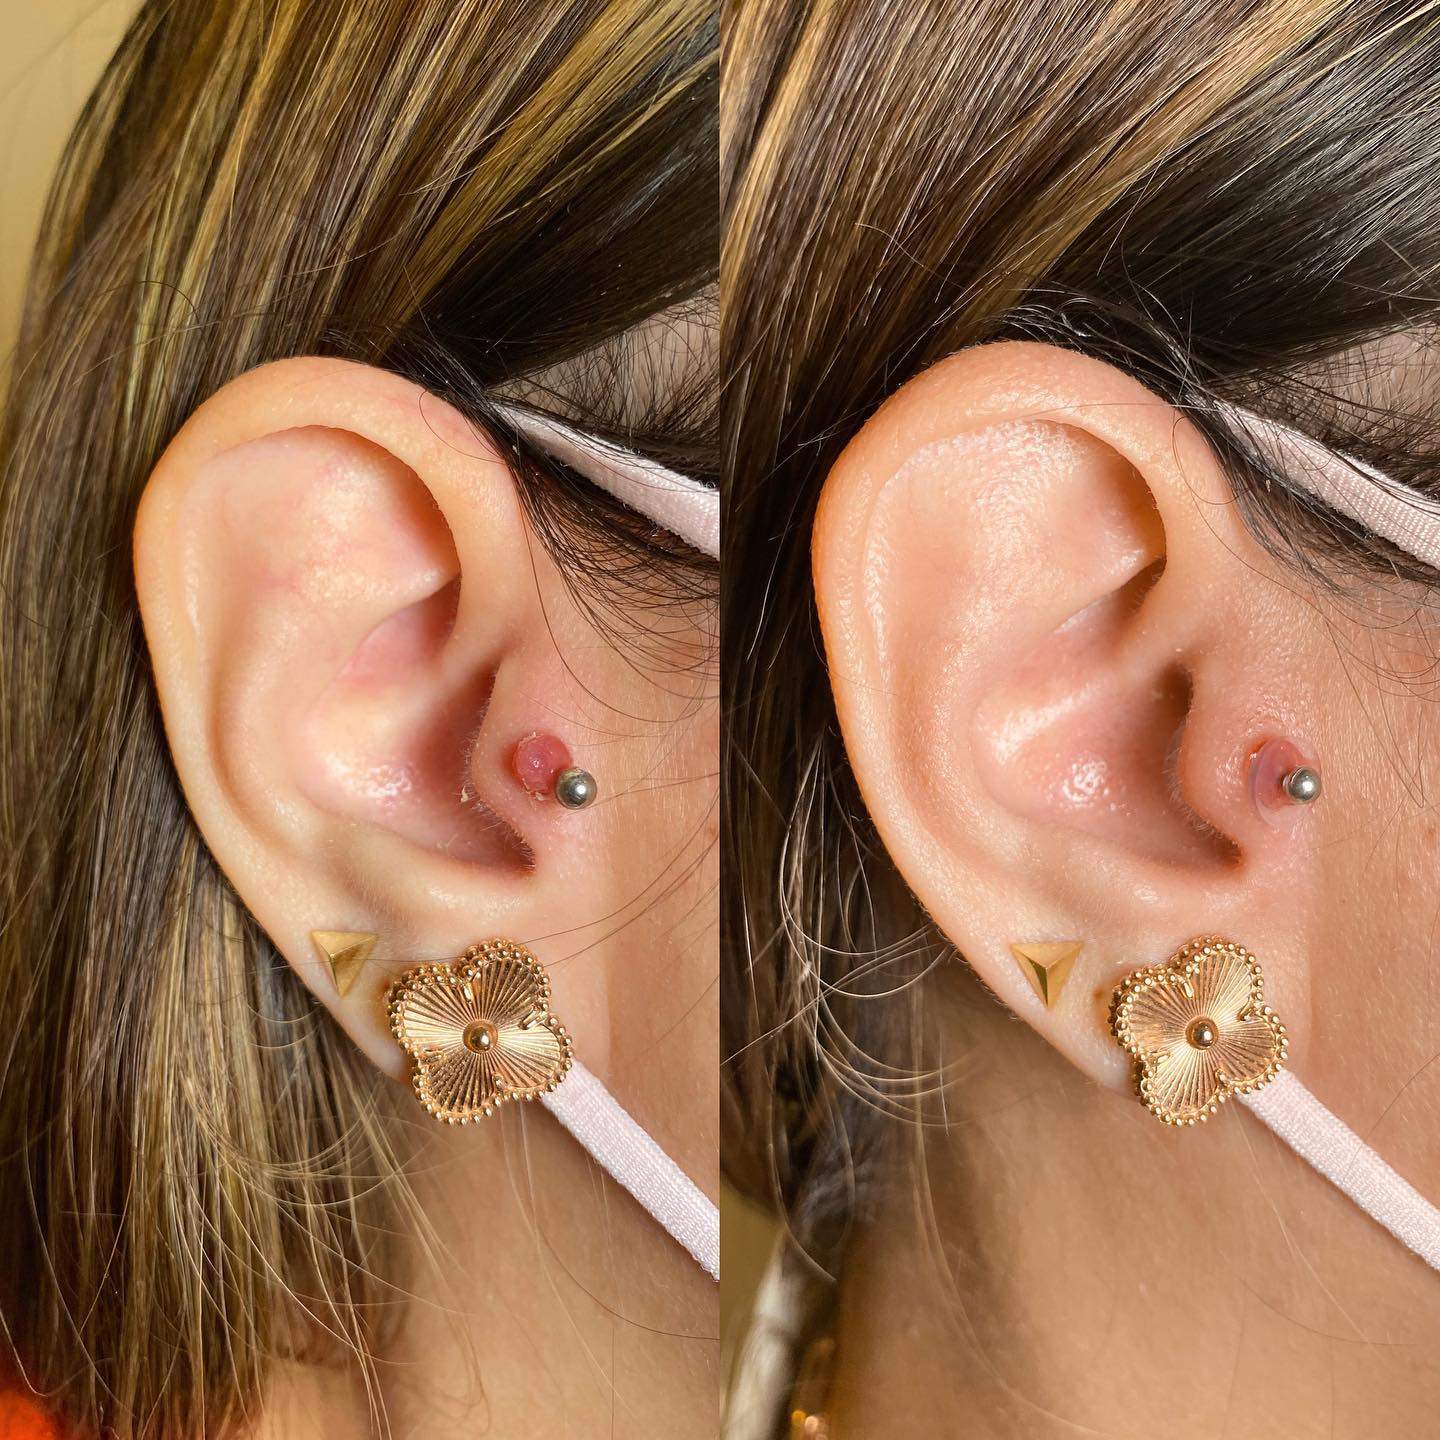 cartilage piercings,